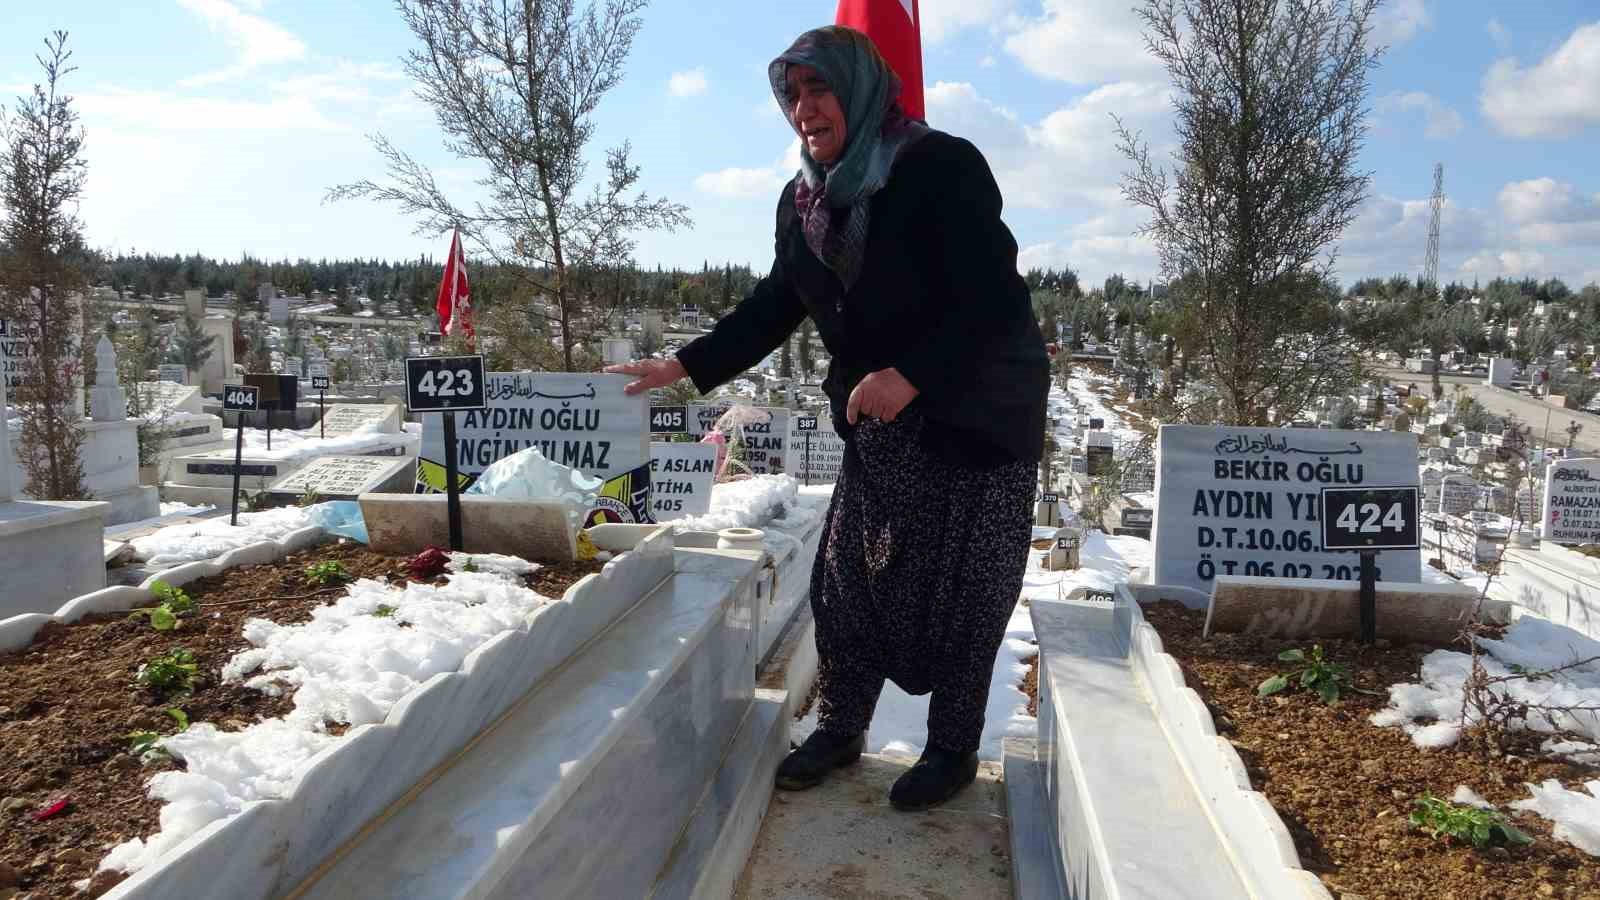 Depremde oğlunu, gelinini ve torunlarını kaybeden yaşlı kadın mezarlıktan ayrılamıyor